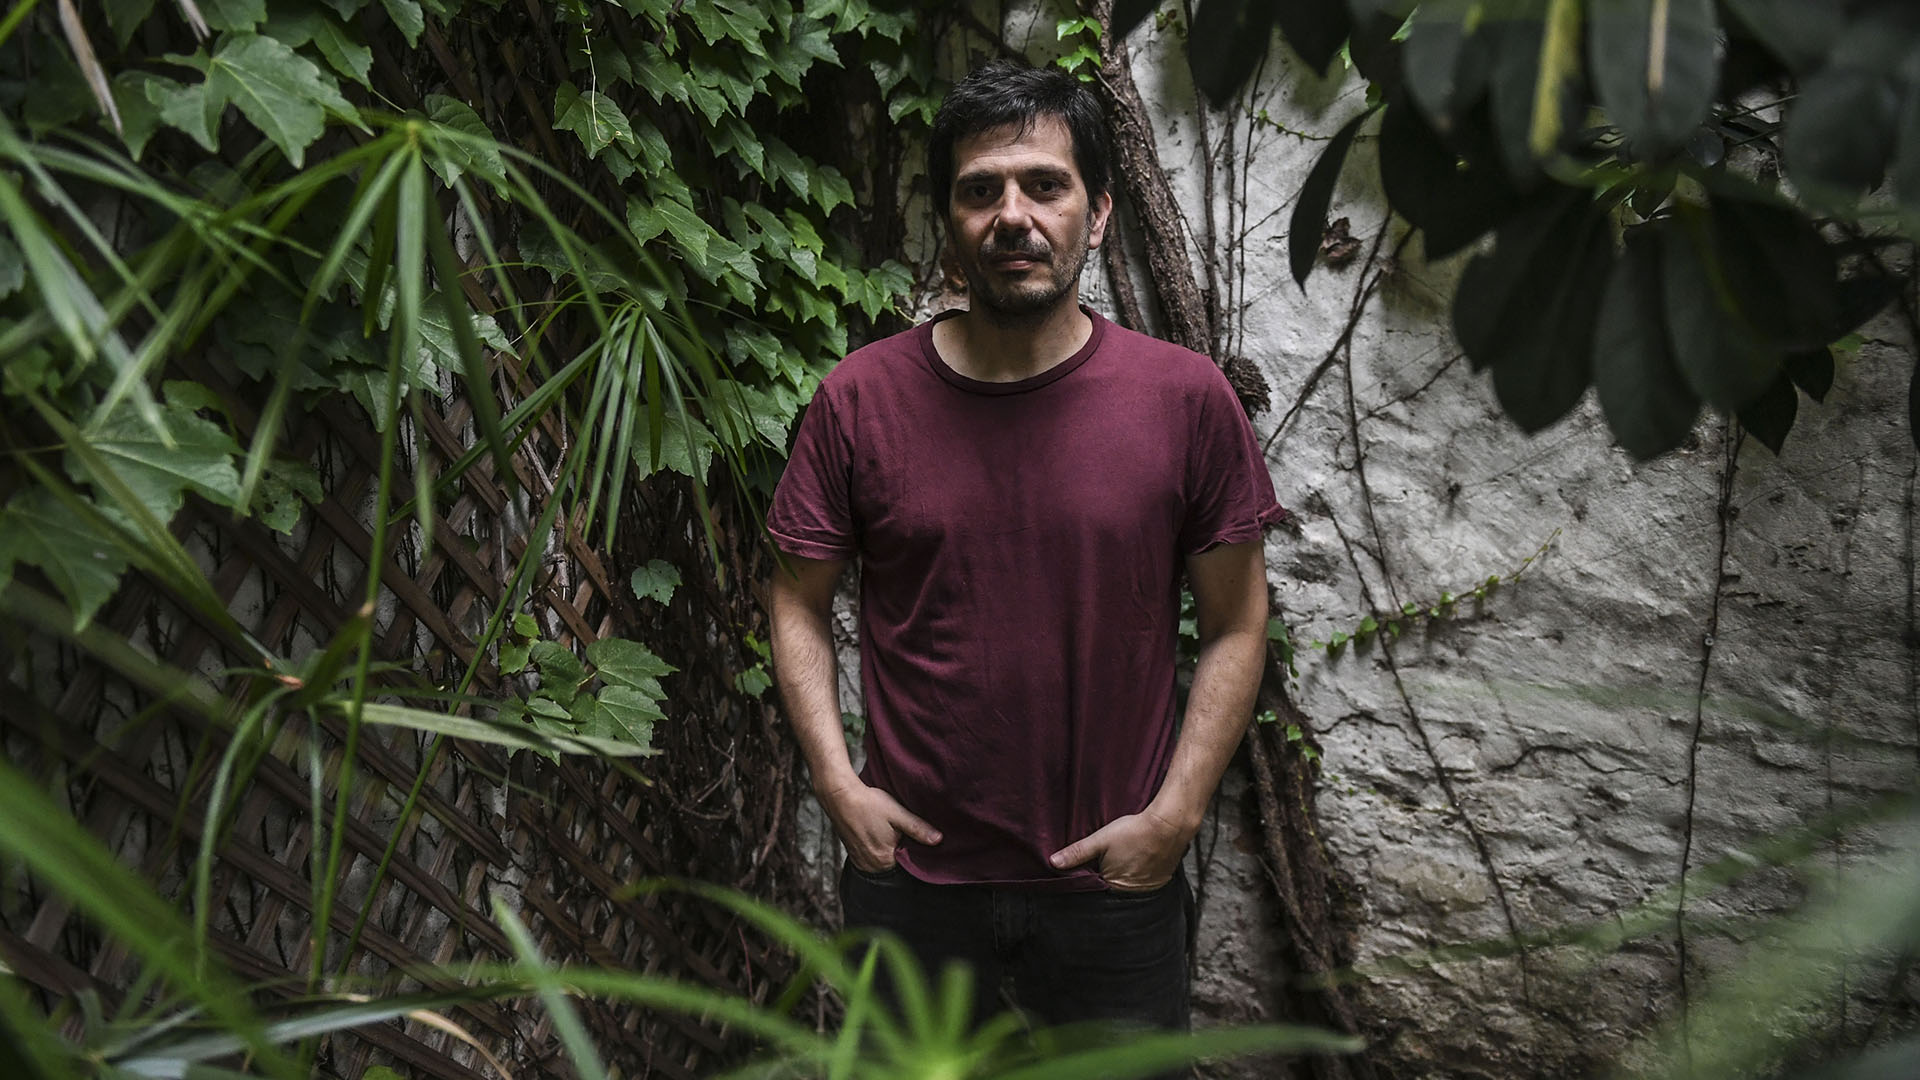 El escritor Sebastián Martínez Daniell, autor de "Dos sherpas", estuvo a cargo de la recomendación de esta semana. (Télam)